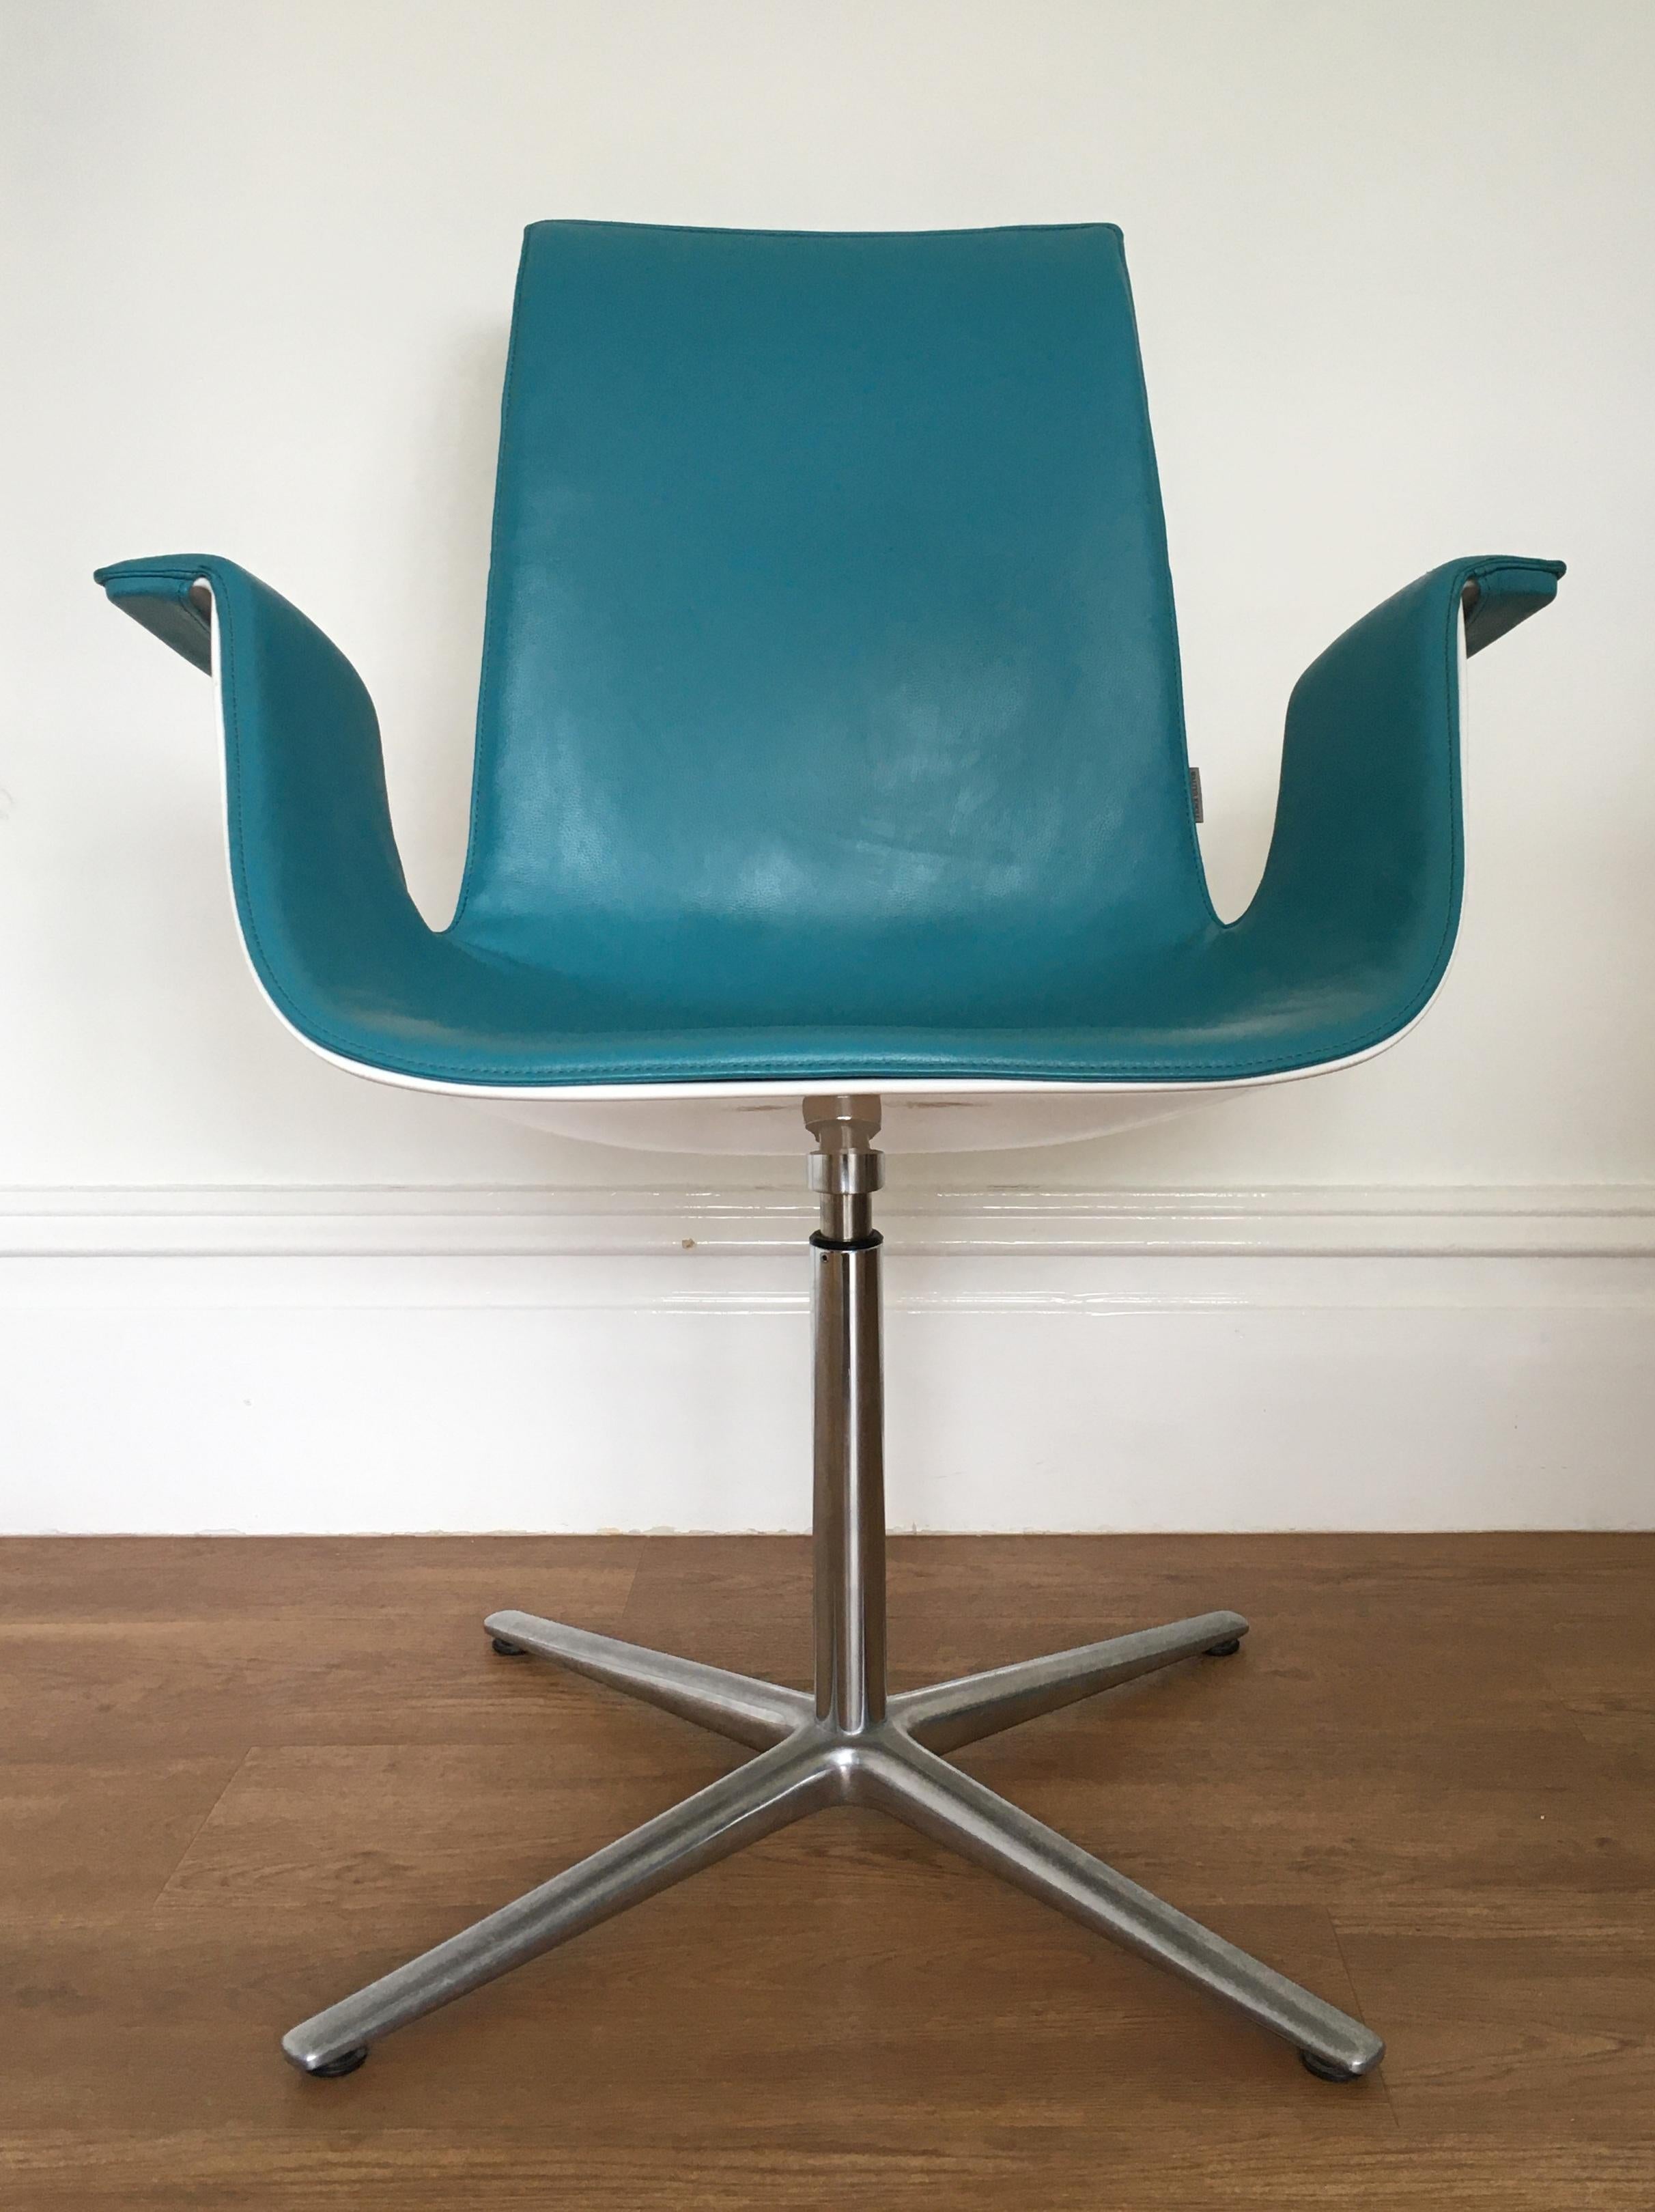 Der 1967 von Fabricius und Kastholm entworfene FK Bucket Chair (auch bekannt als Bird Chair) ist eines der ikonischen, sofort erkennbaren Designs aus der Mitte des 20. Jahrhunderts.

Der Stuhl hat eine türkisfarbene Lederpolsterung mit einer weiß